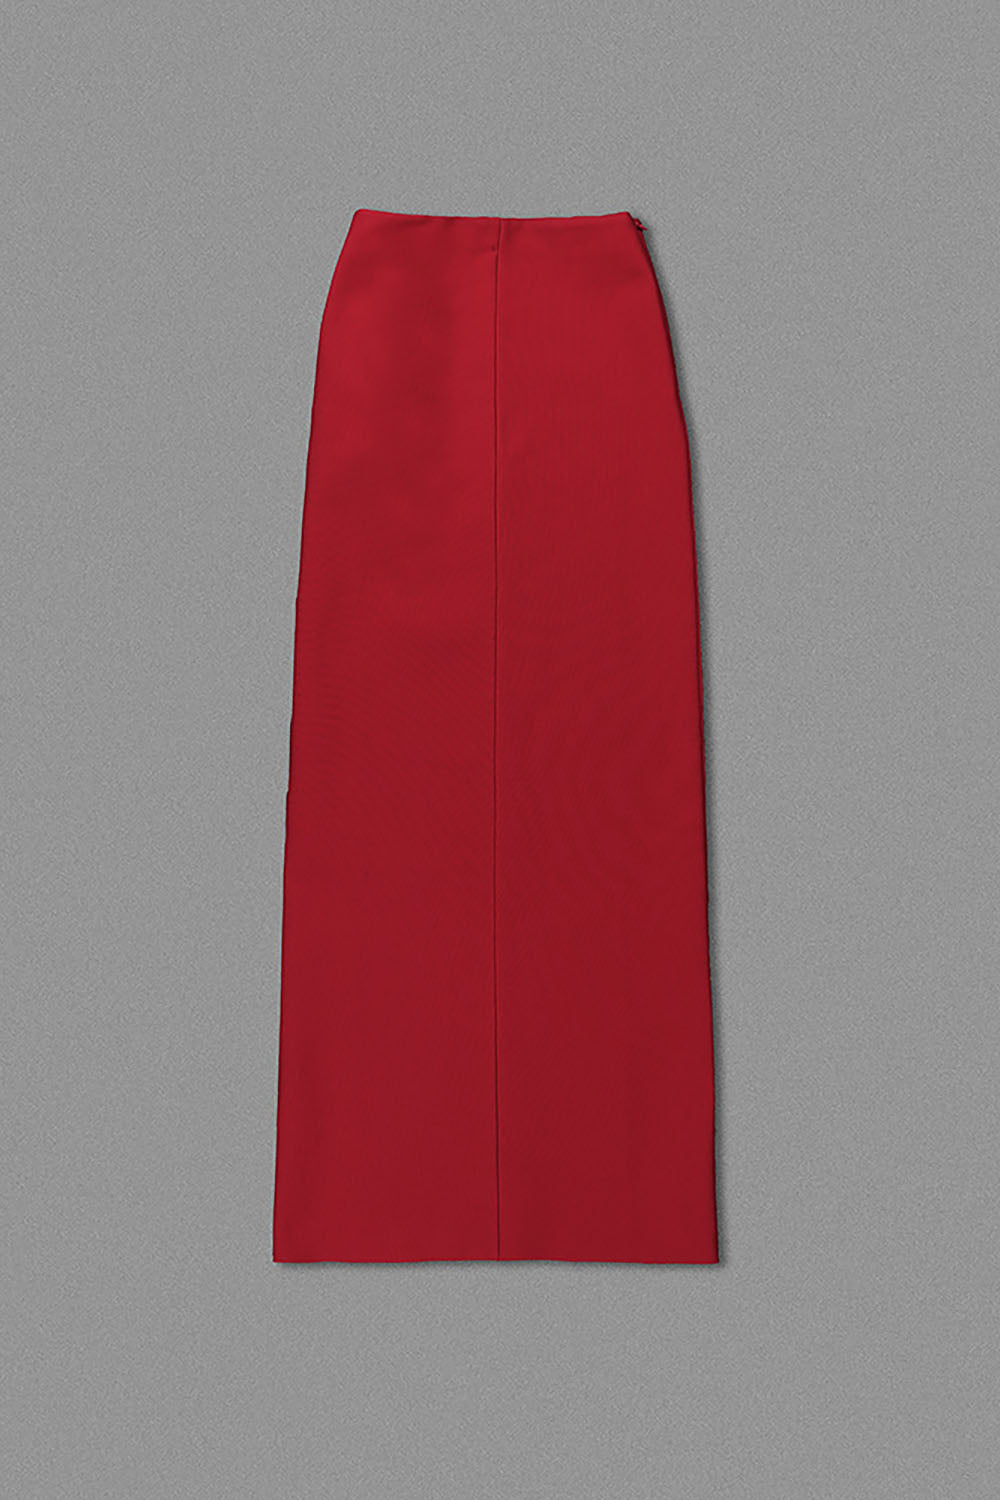 Falda ceñida midi con aberturas y apliques florales en rojo